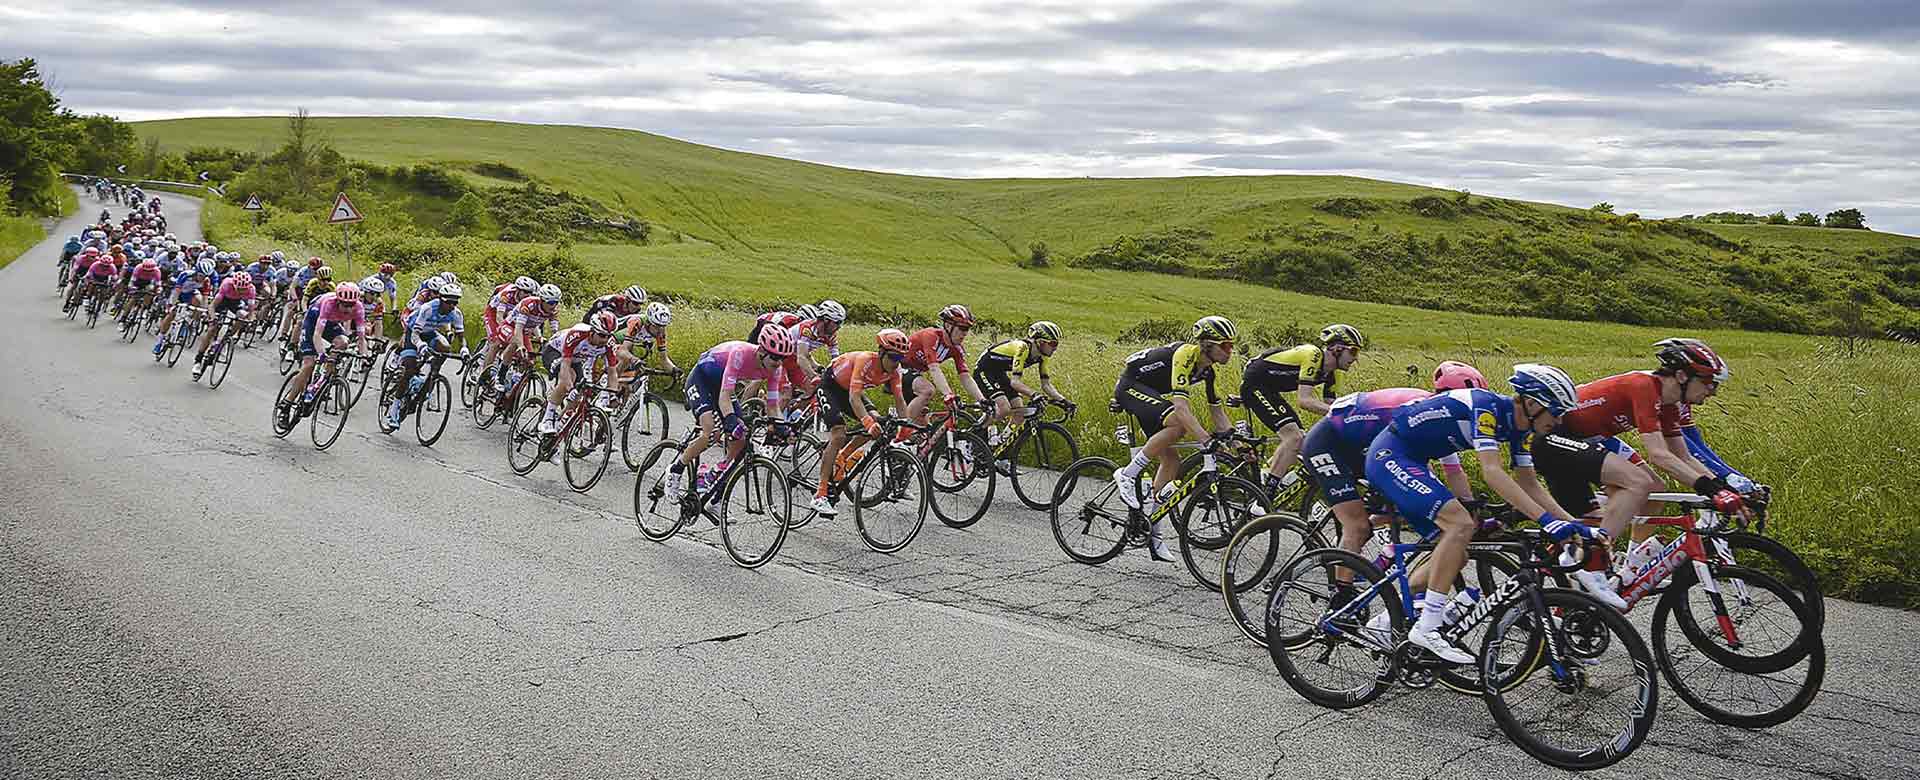 Immagine della quarta tappa del Giro d'Italia 2019 da Orbetello a Frascati